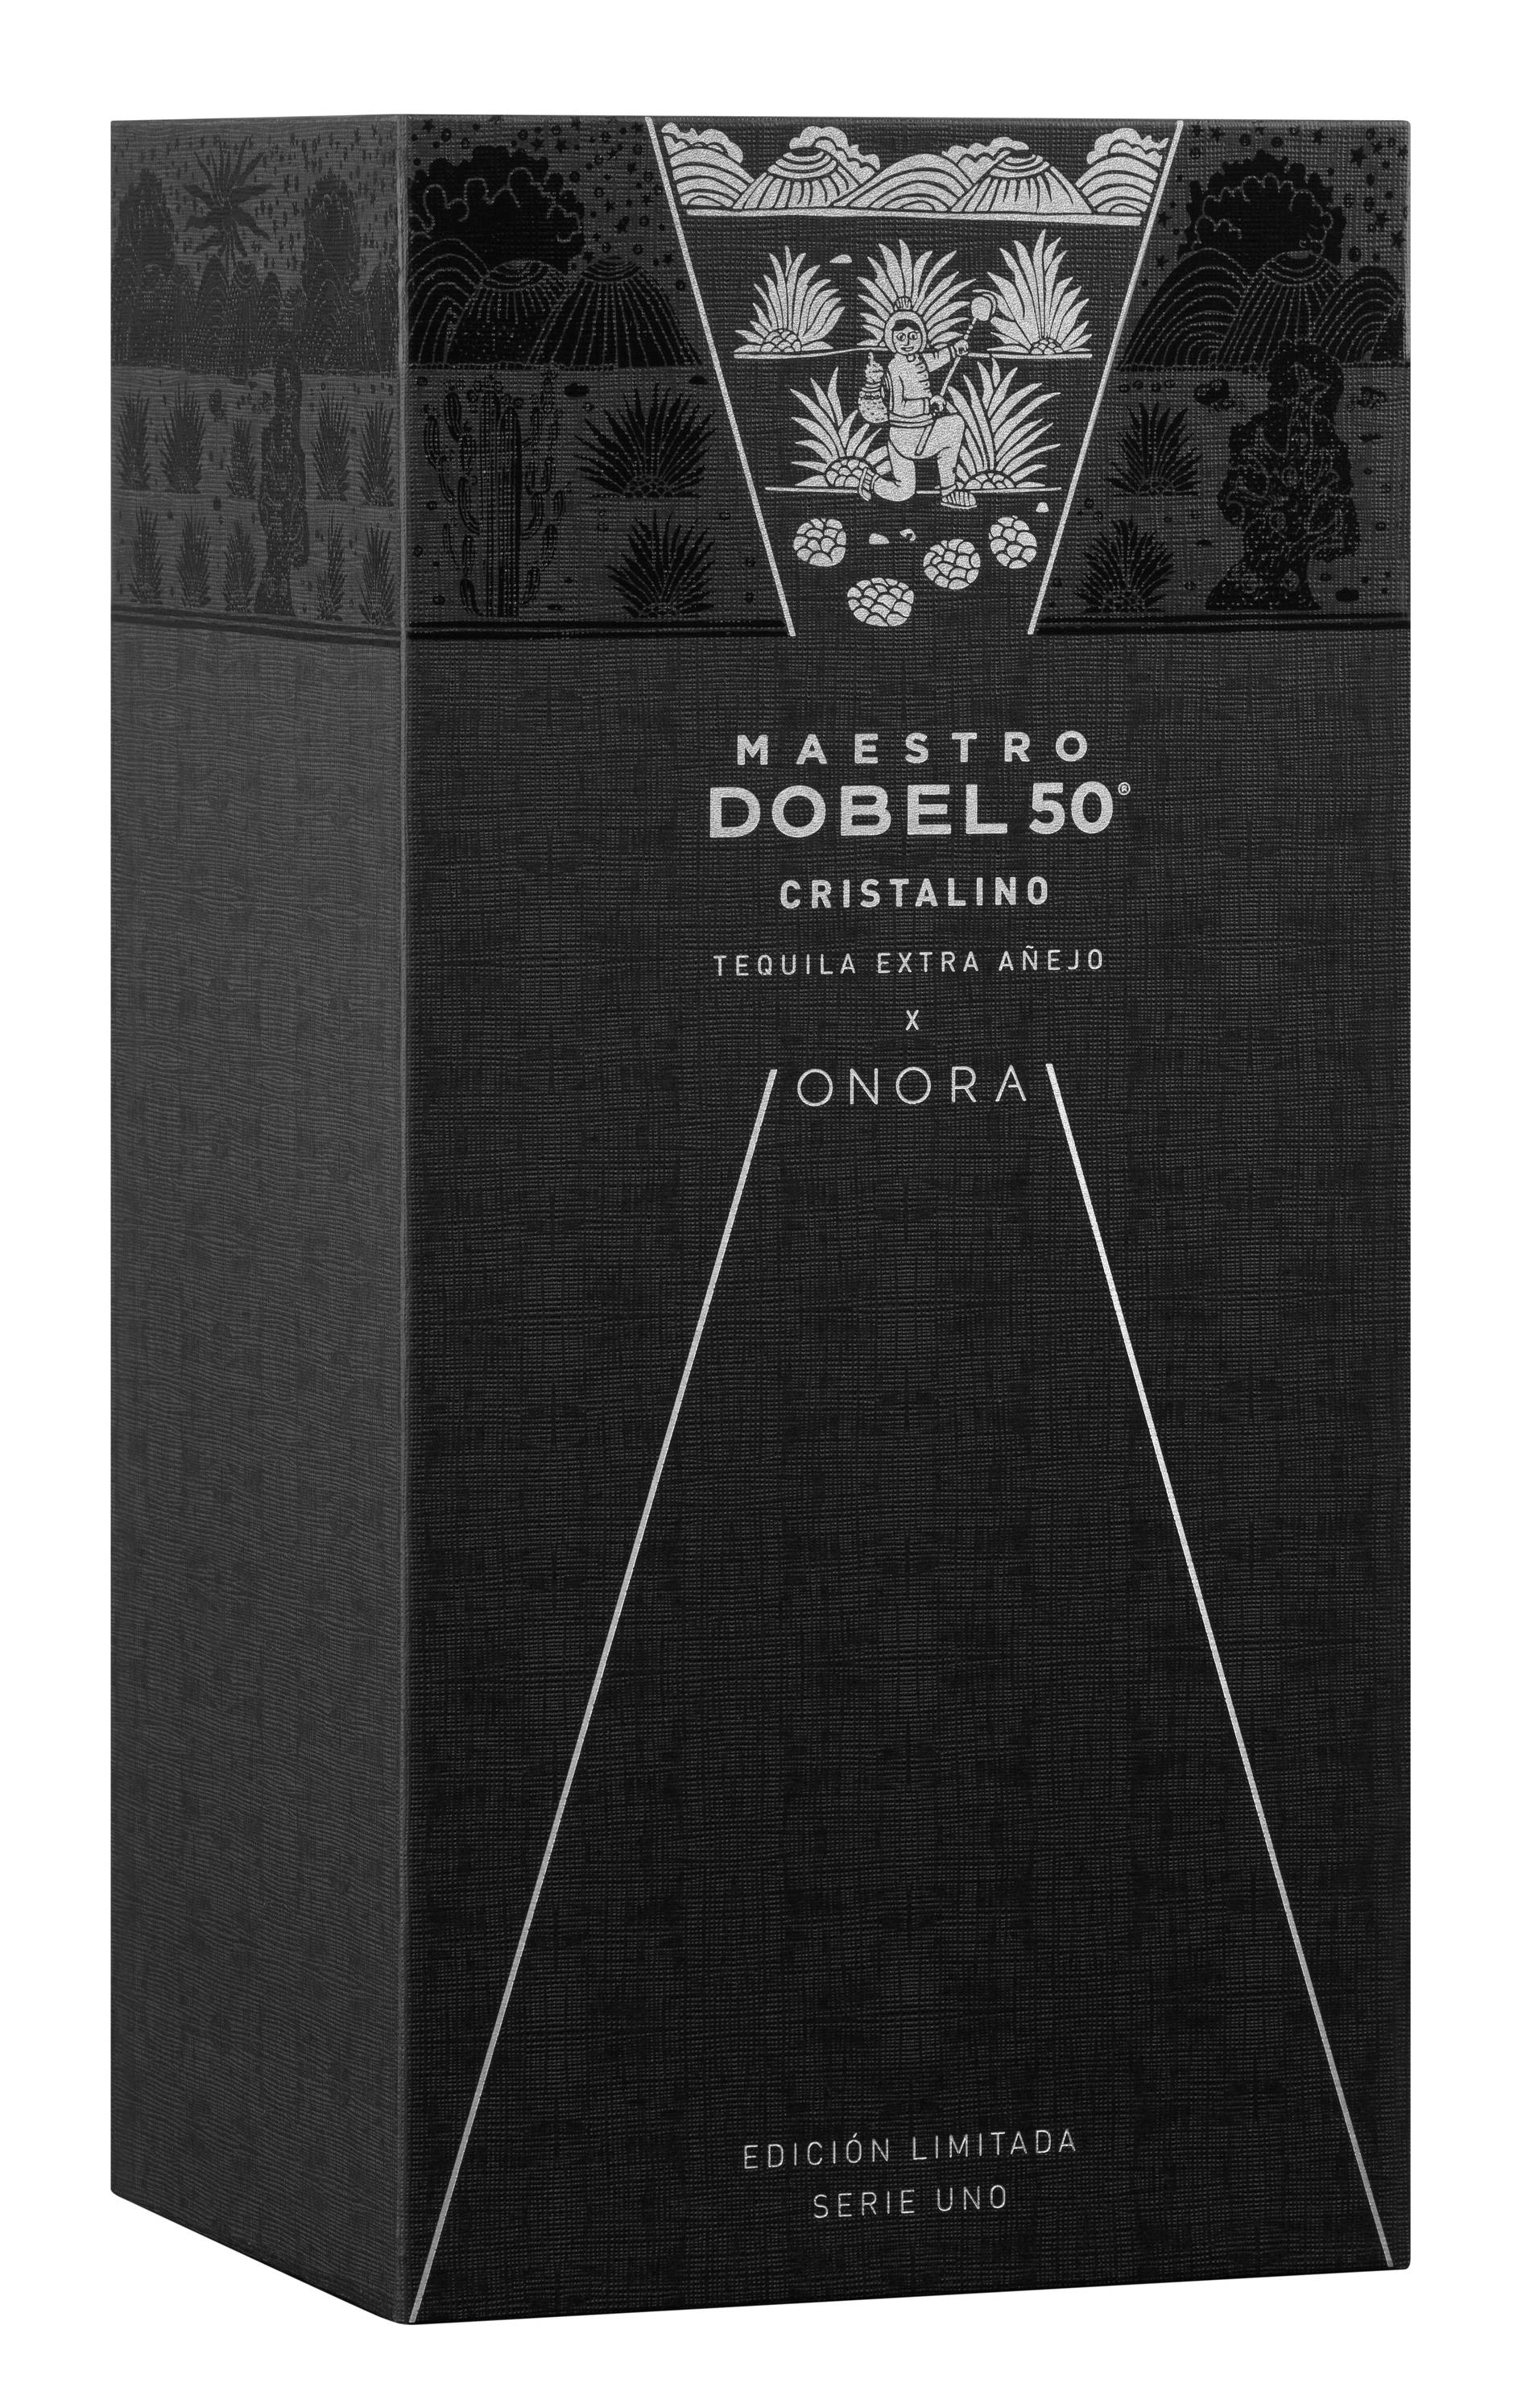 Maestro Dobel 50 tequila bottle 